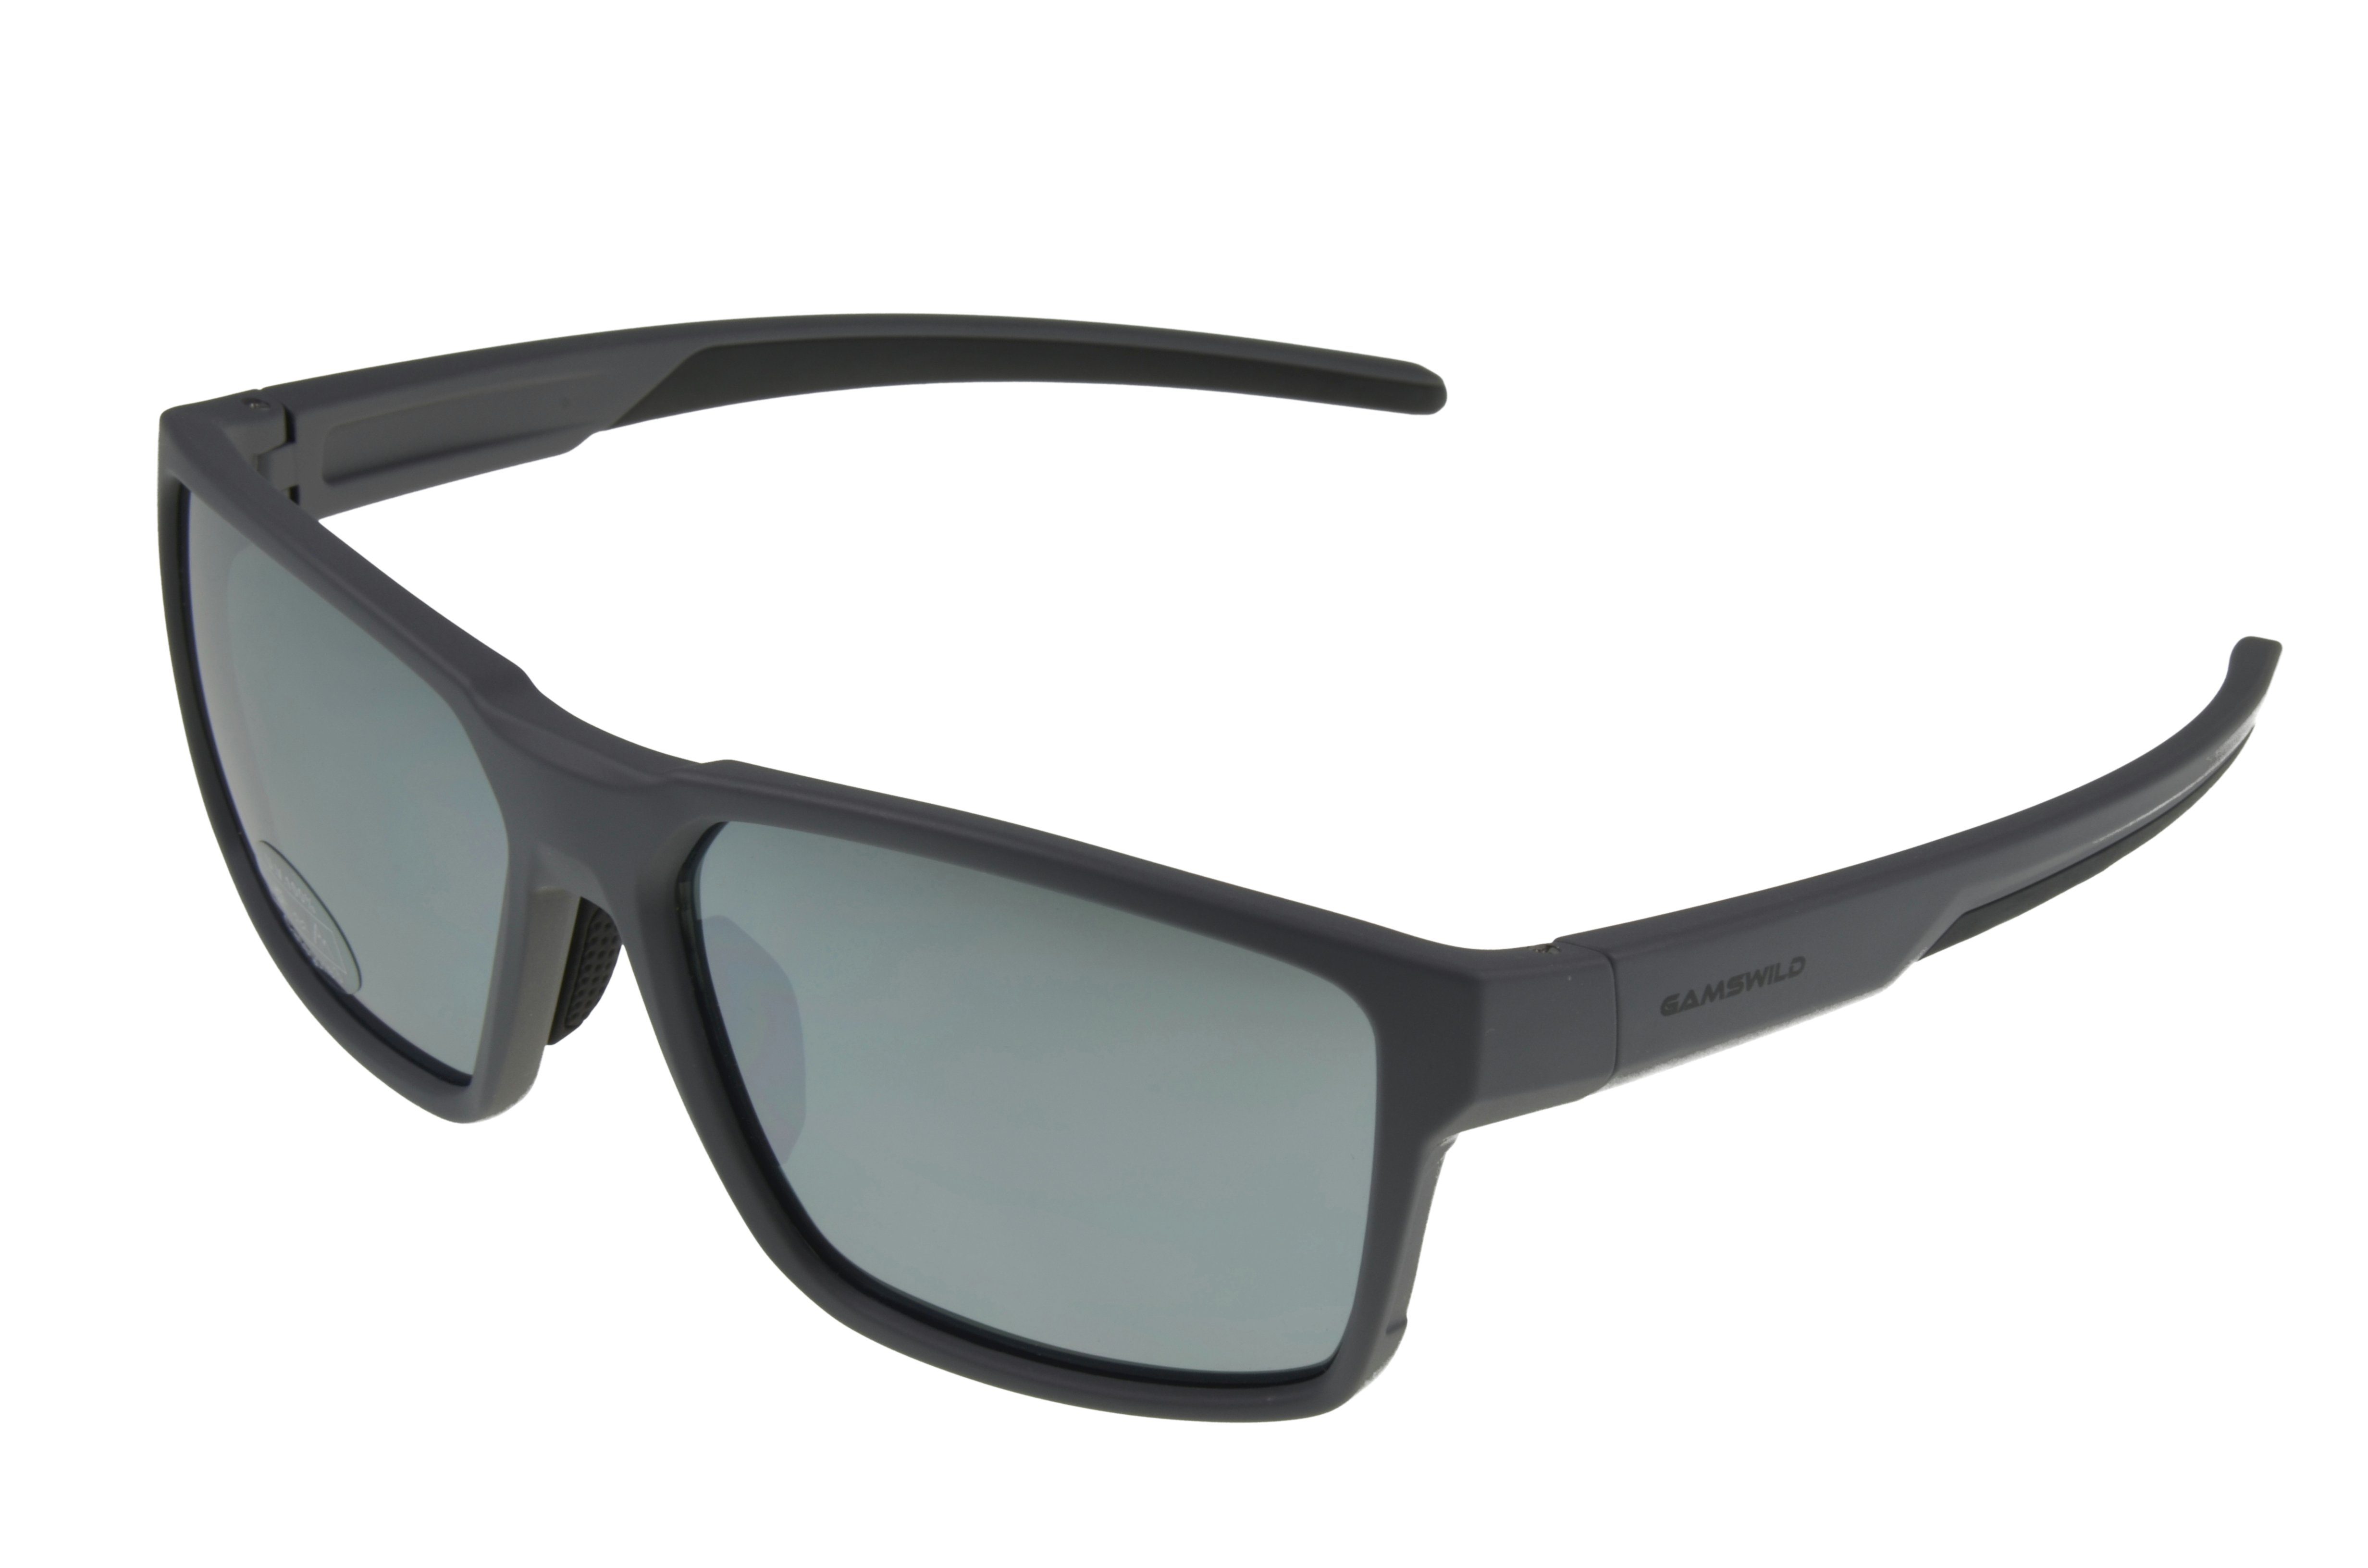 Gamswild Sonnenbrille WS5936 Sportbrille Herren grau, Gläser Unisex schwarz, Fahrradbrille Damen Skibrille braun getönte